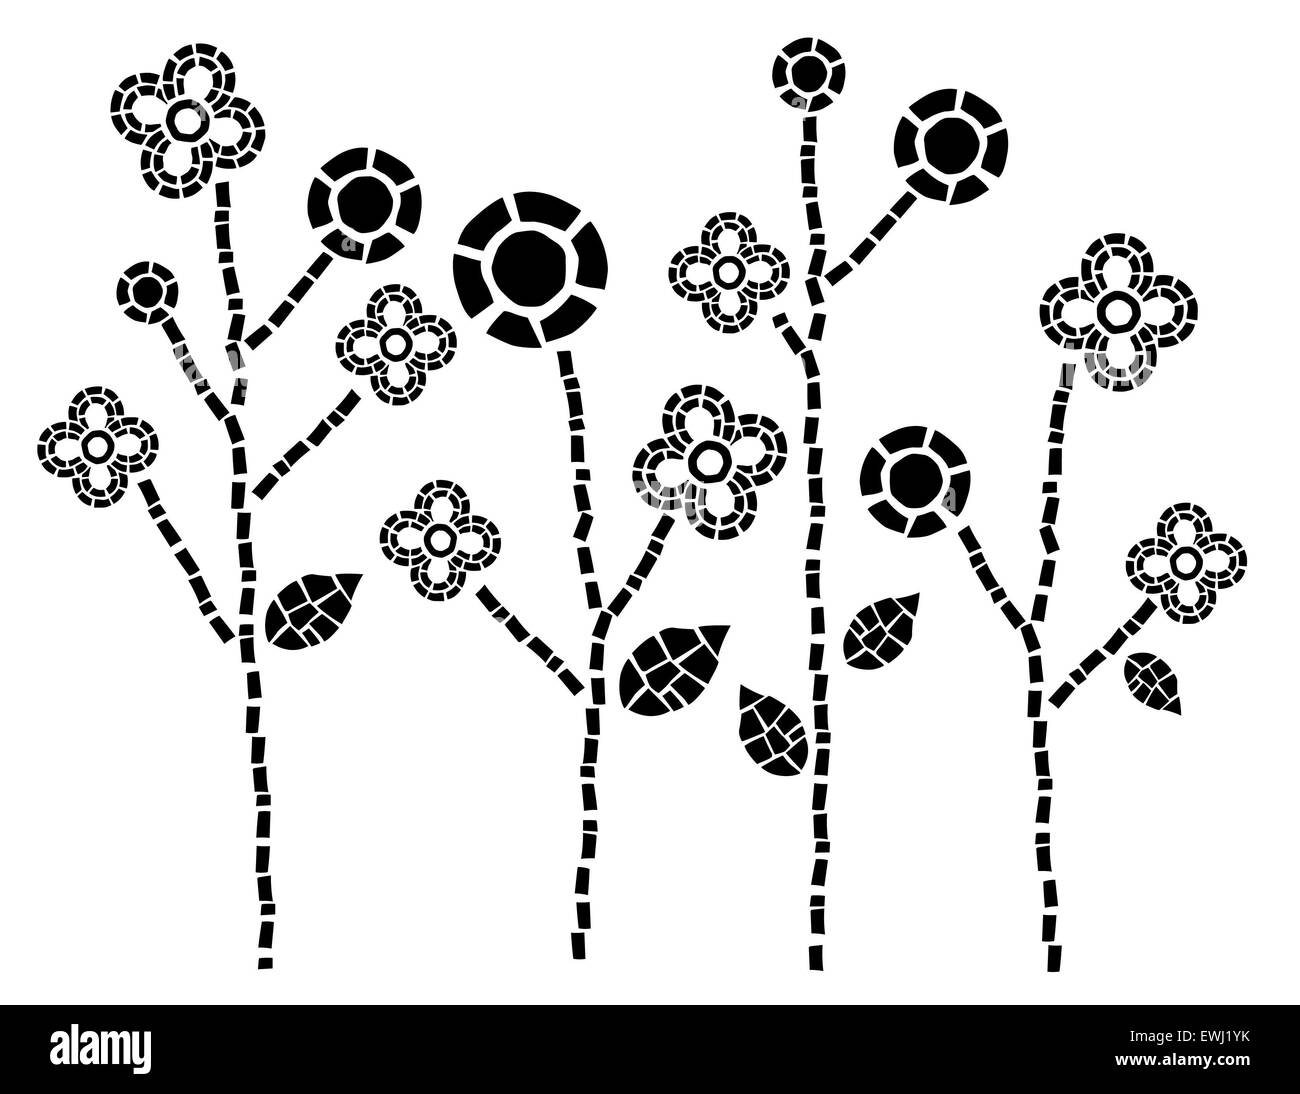 Illustrazione Digitale di fiori geometrici in bianco e nero per usi decorativi Foto Stock